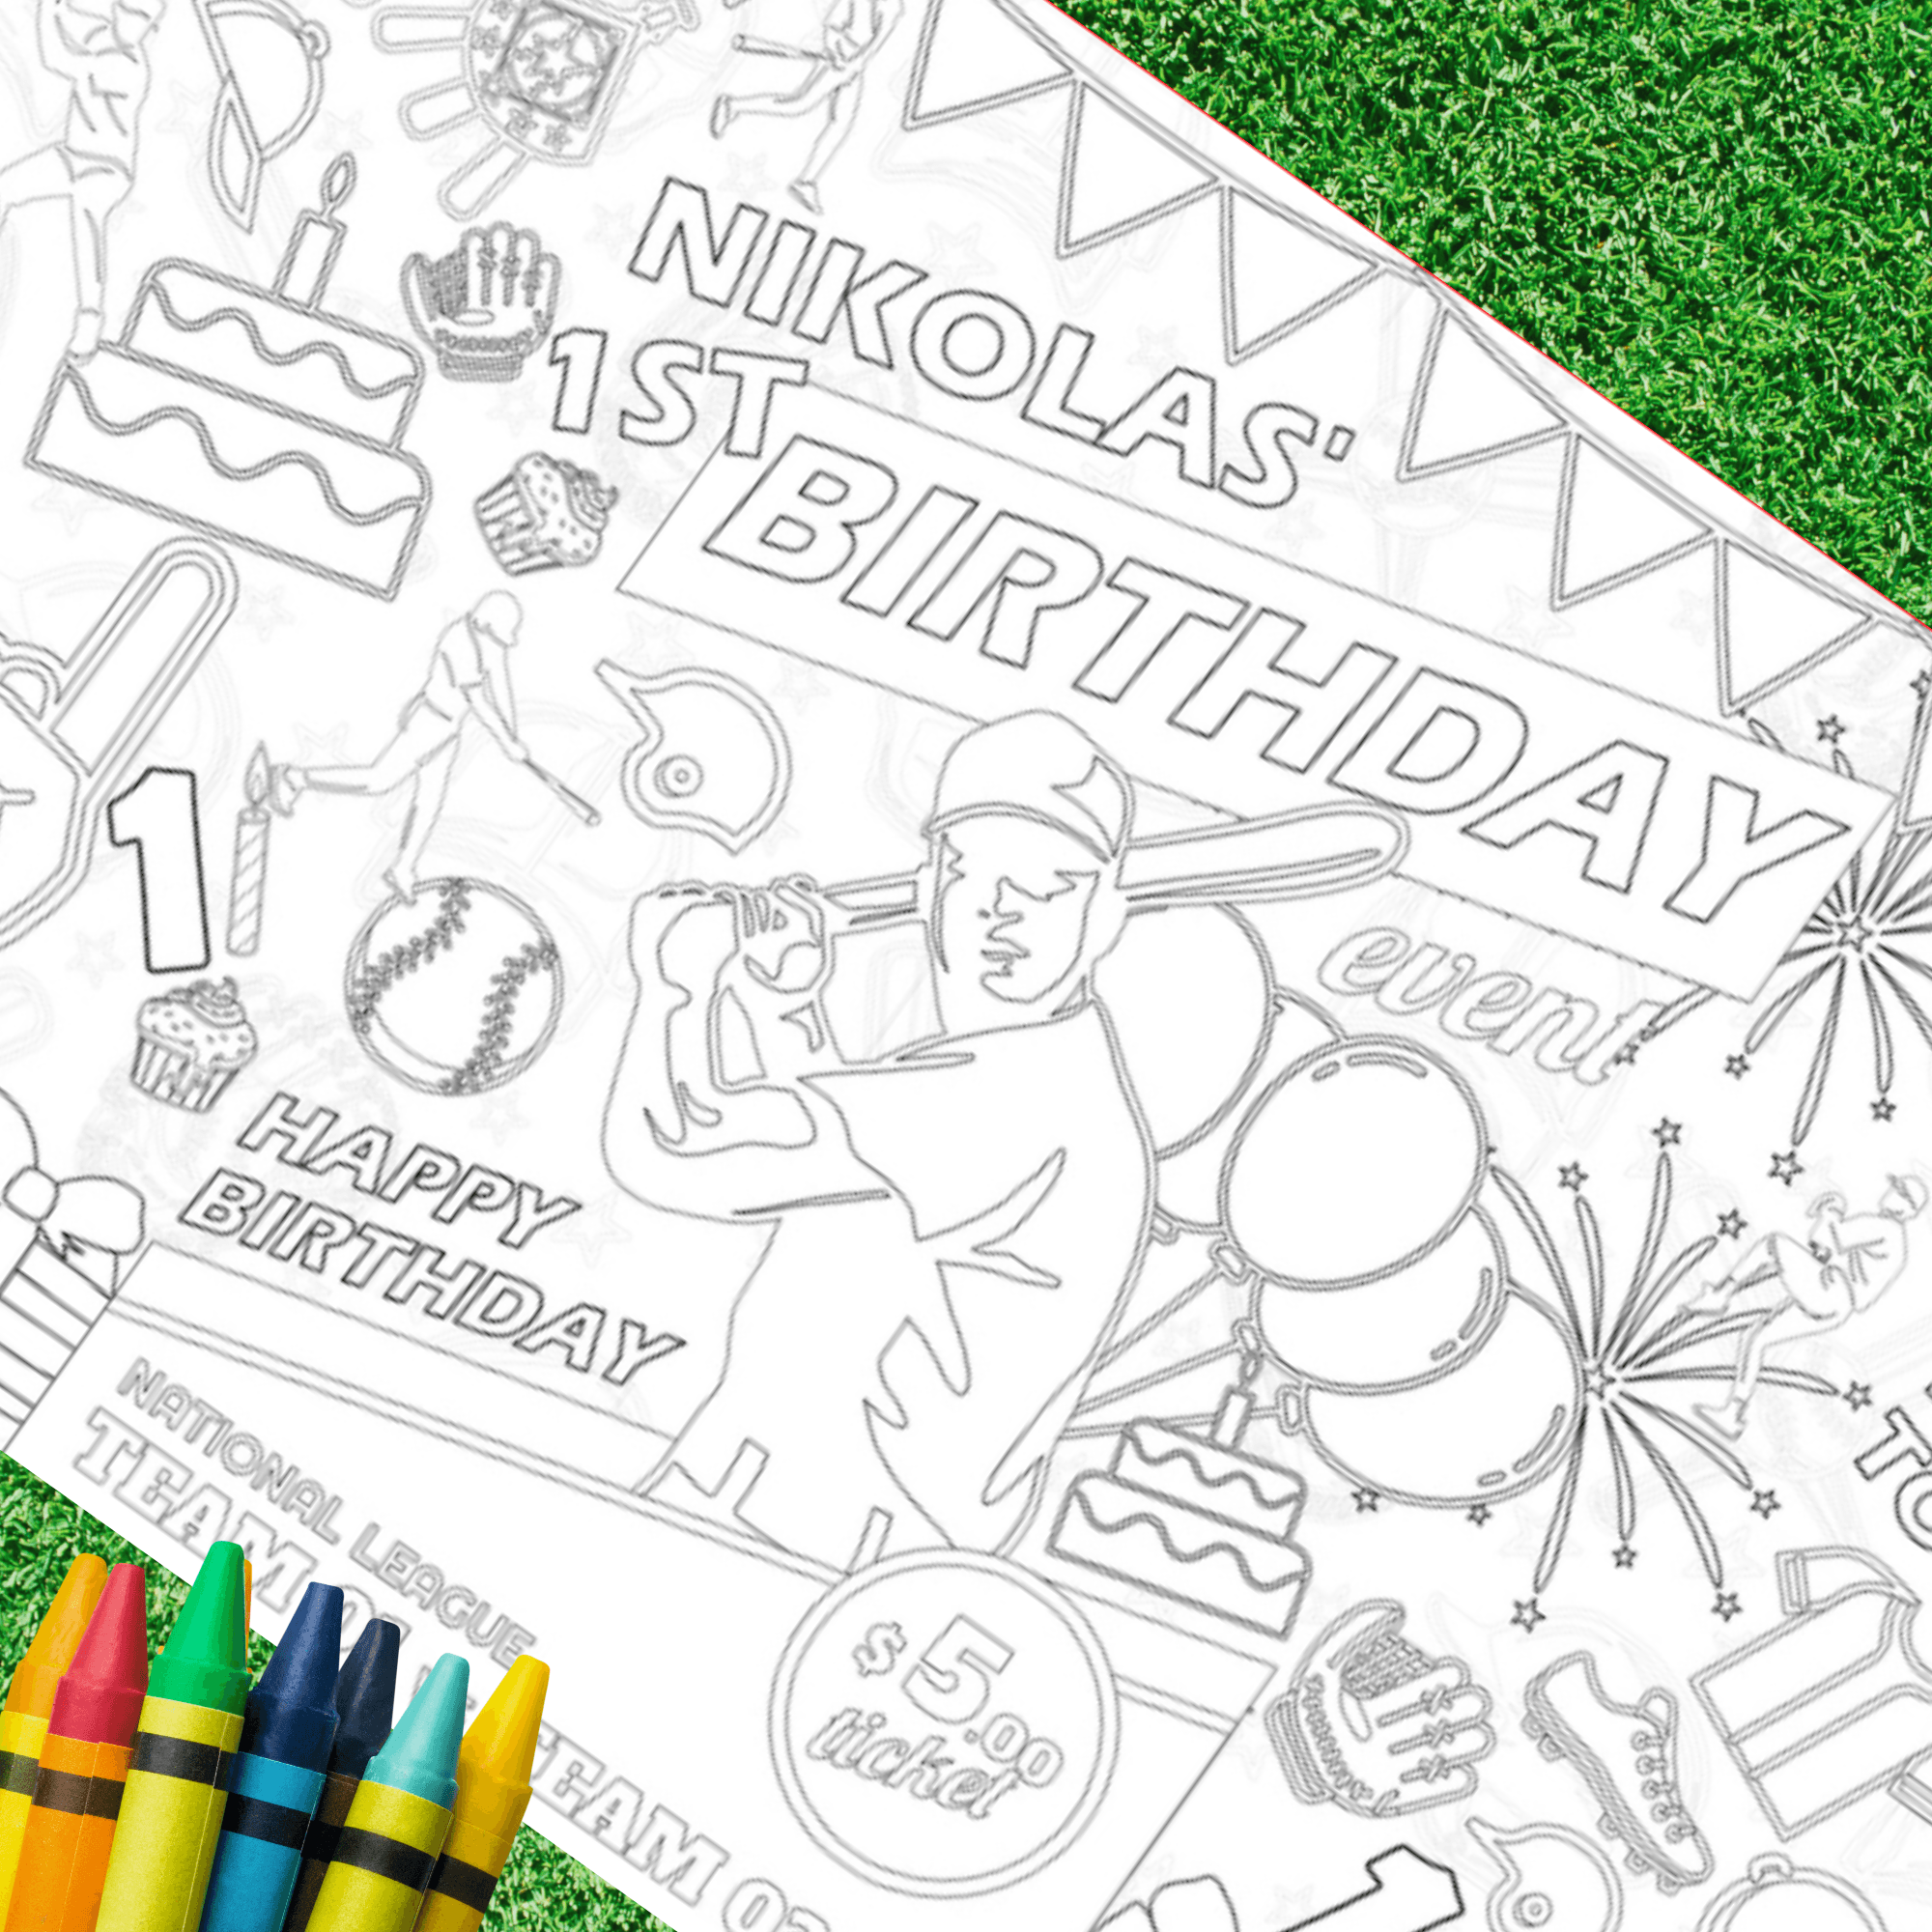 Baseball Birthday Coloring Activity Table Cover | Amazing Pinatas 